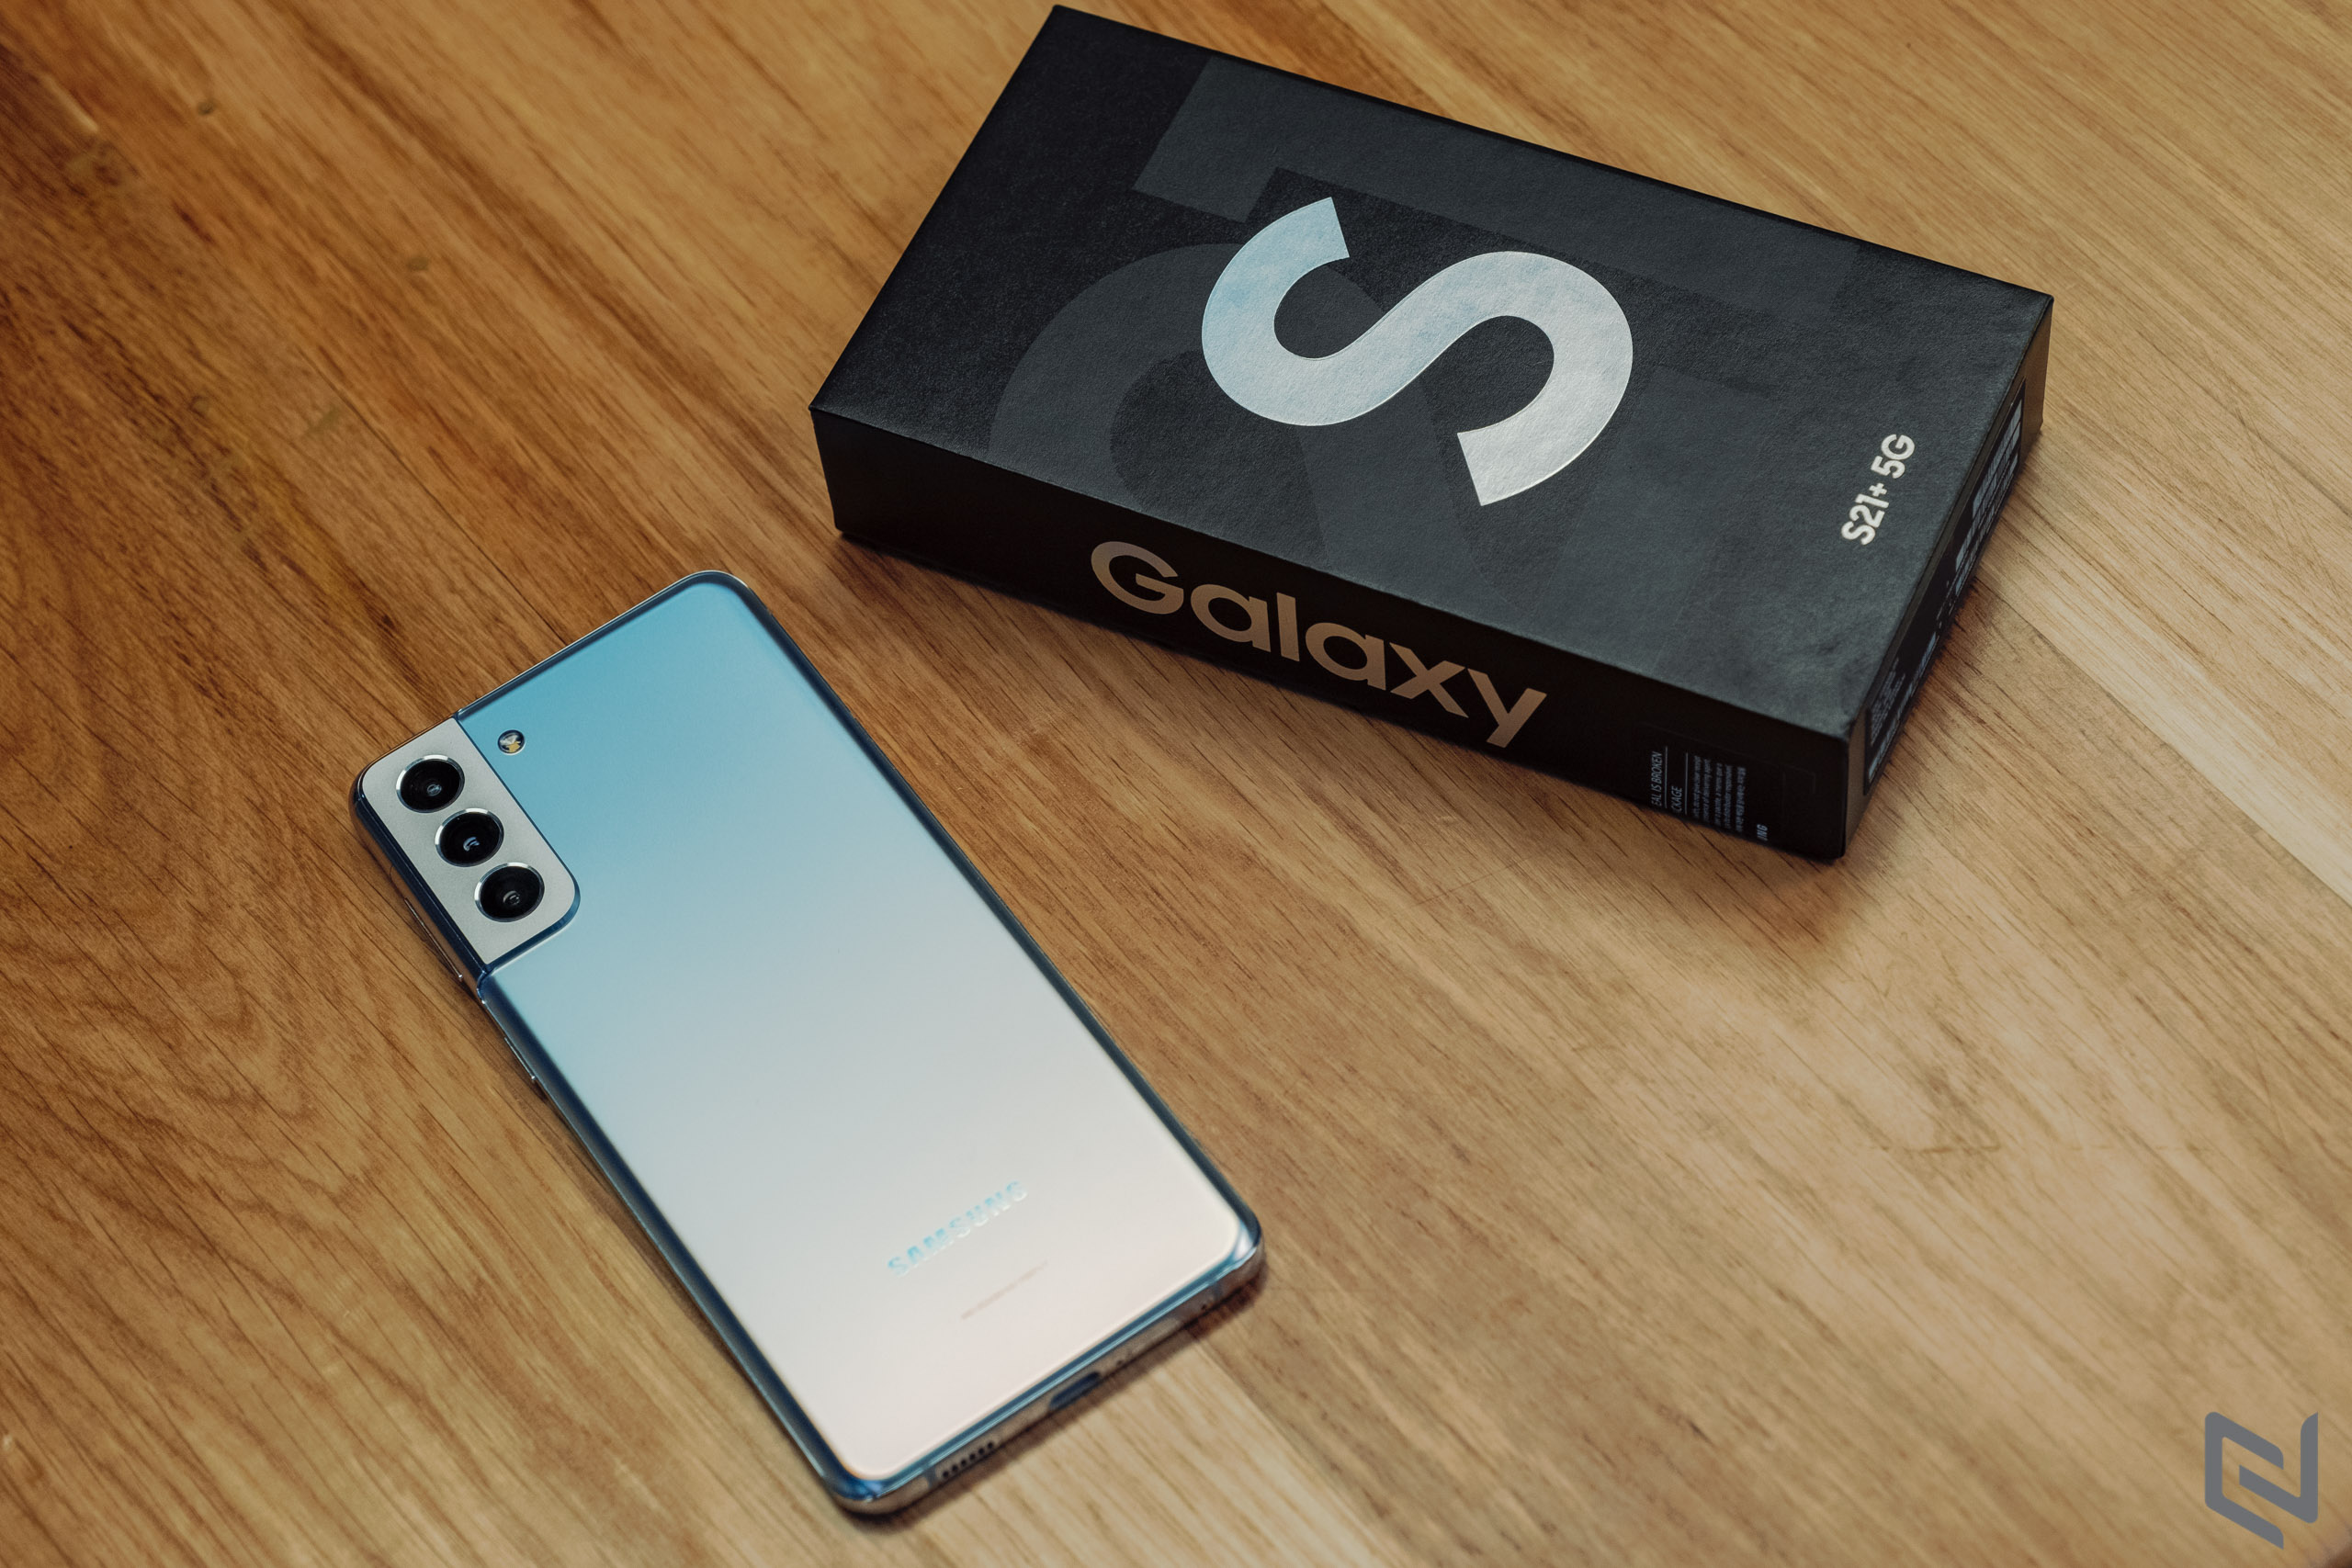 Mở hộp Galaxy S21+ 5G chính hãng: Đánh đổi cụm camera để có thiết kế hài hoà, các trang bị còn lại đều cao cấp